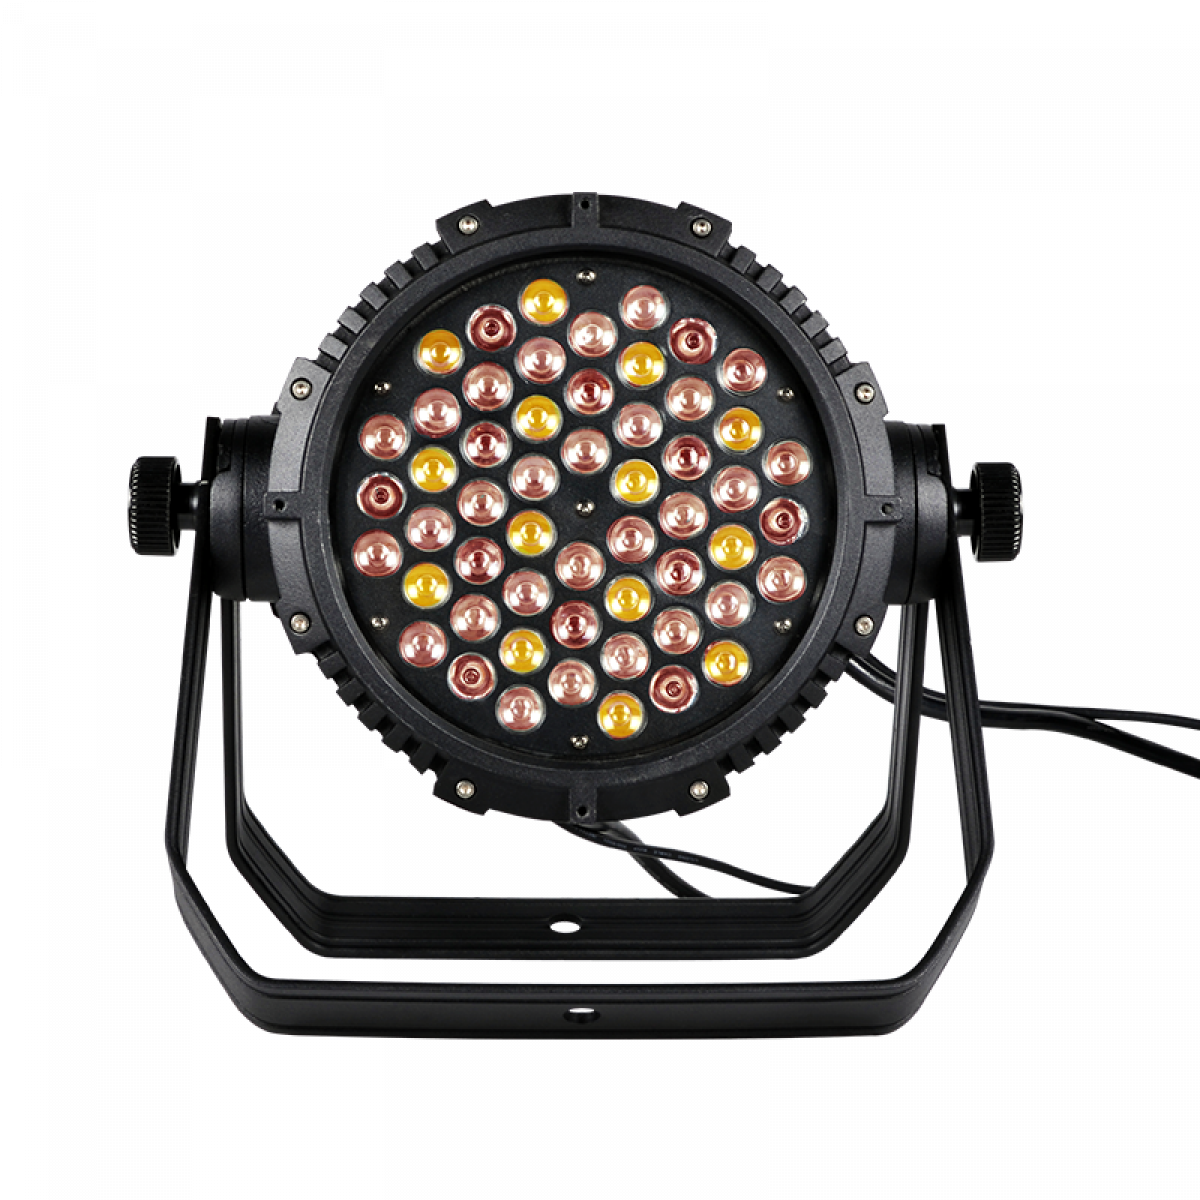 Прожектор 54. Архитектурный прожектор типа spot RGBW DMX RDM. Светильник диодный (прожектор LEDPAR 64birayplc003). Прожектор светодиодный угол луча: 45° (18*15w 5-in-1 LEDS, RGBAW, DMX), 9ch. Si-045b: LEDPAR 1815. Color imagination LEDPAR 1815.